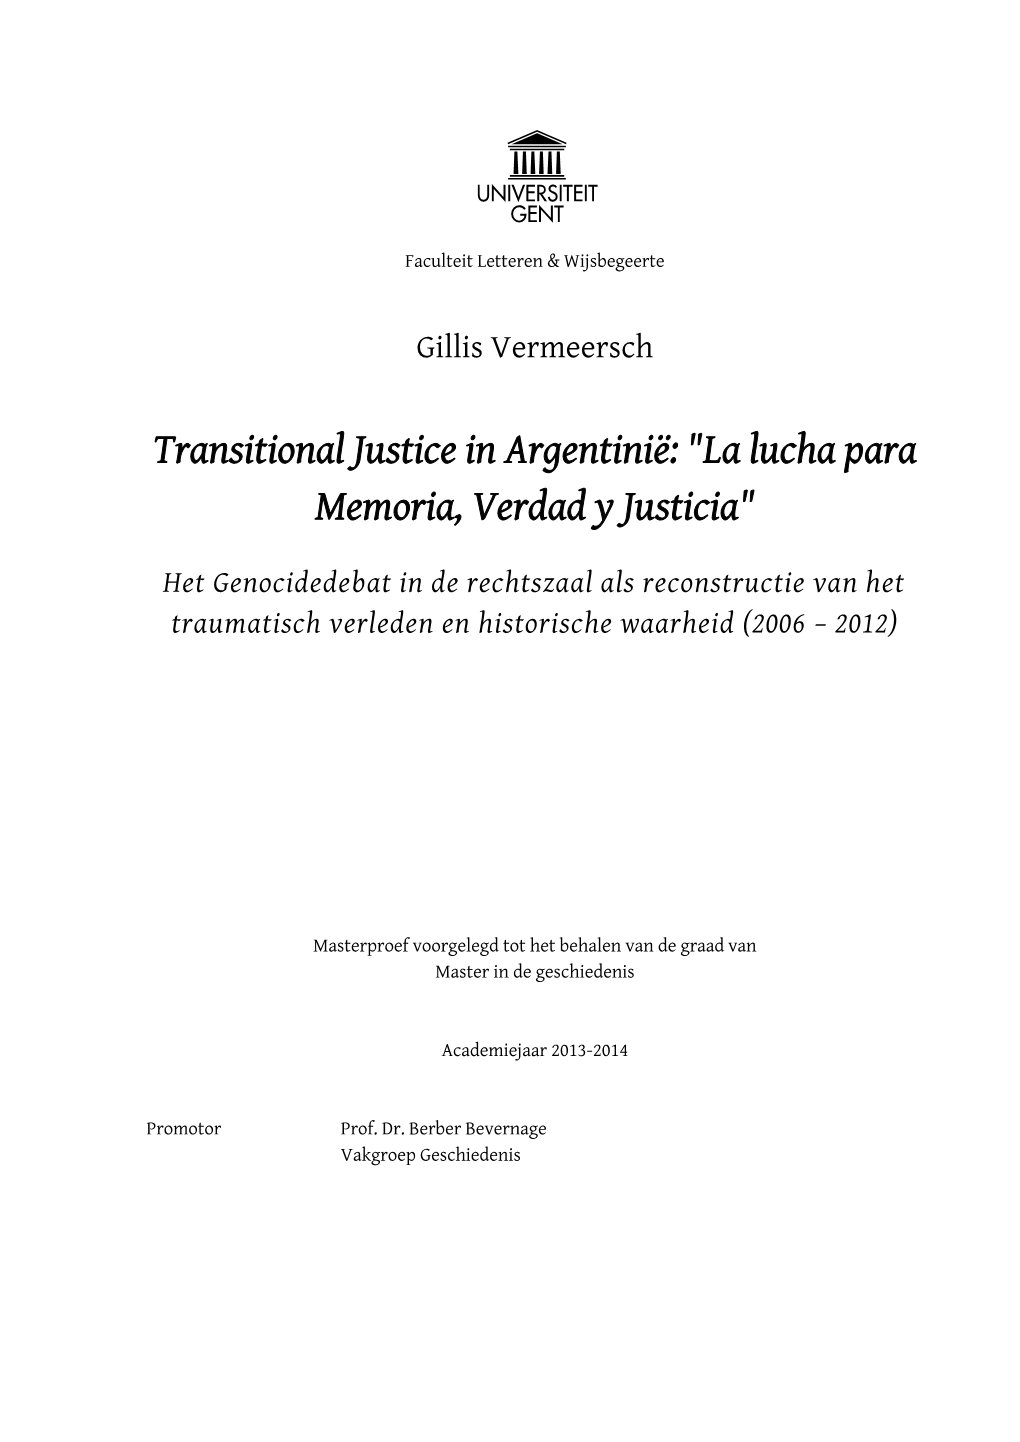 Transitional Justice in Argentinië: "La Lucha Para Memoria, Verdad Y Justicia"